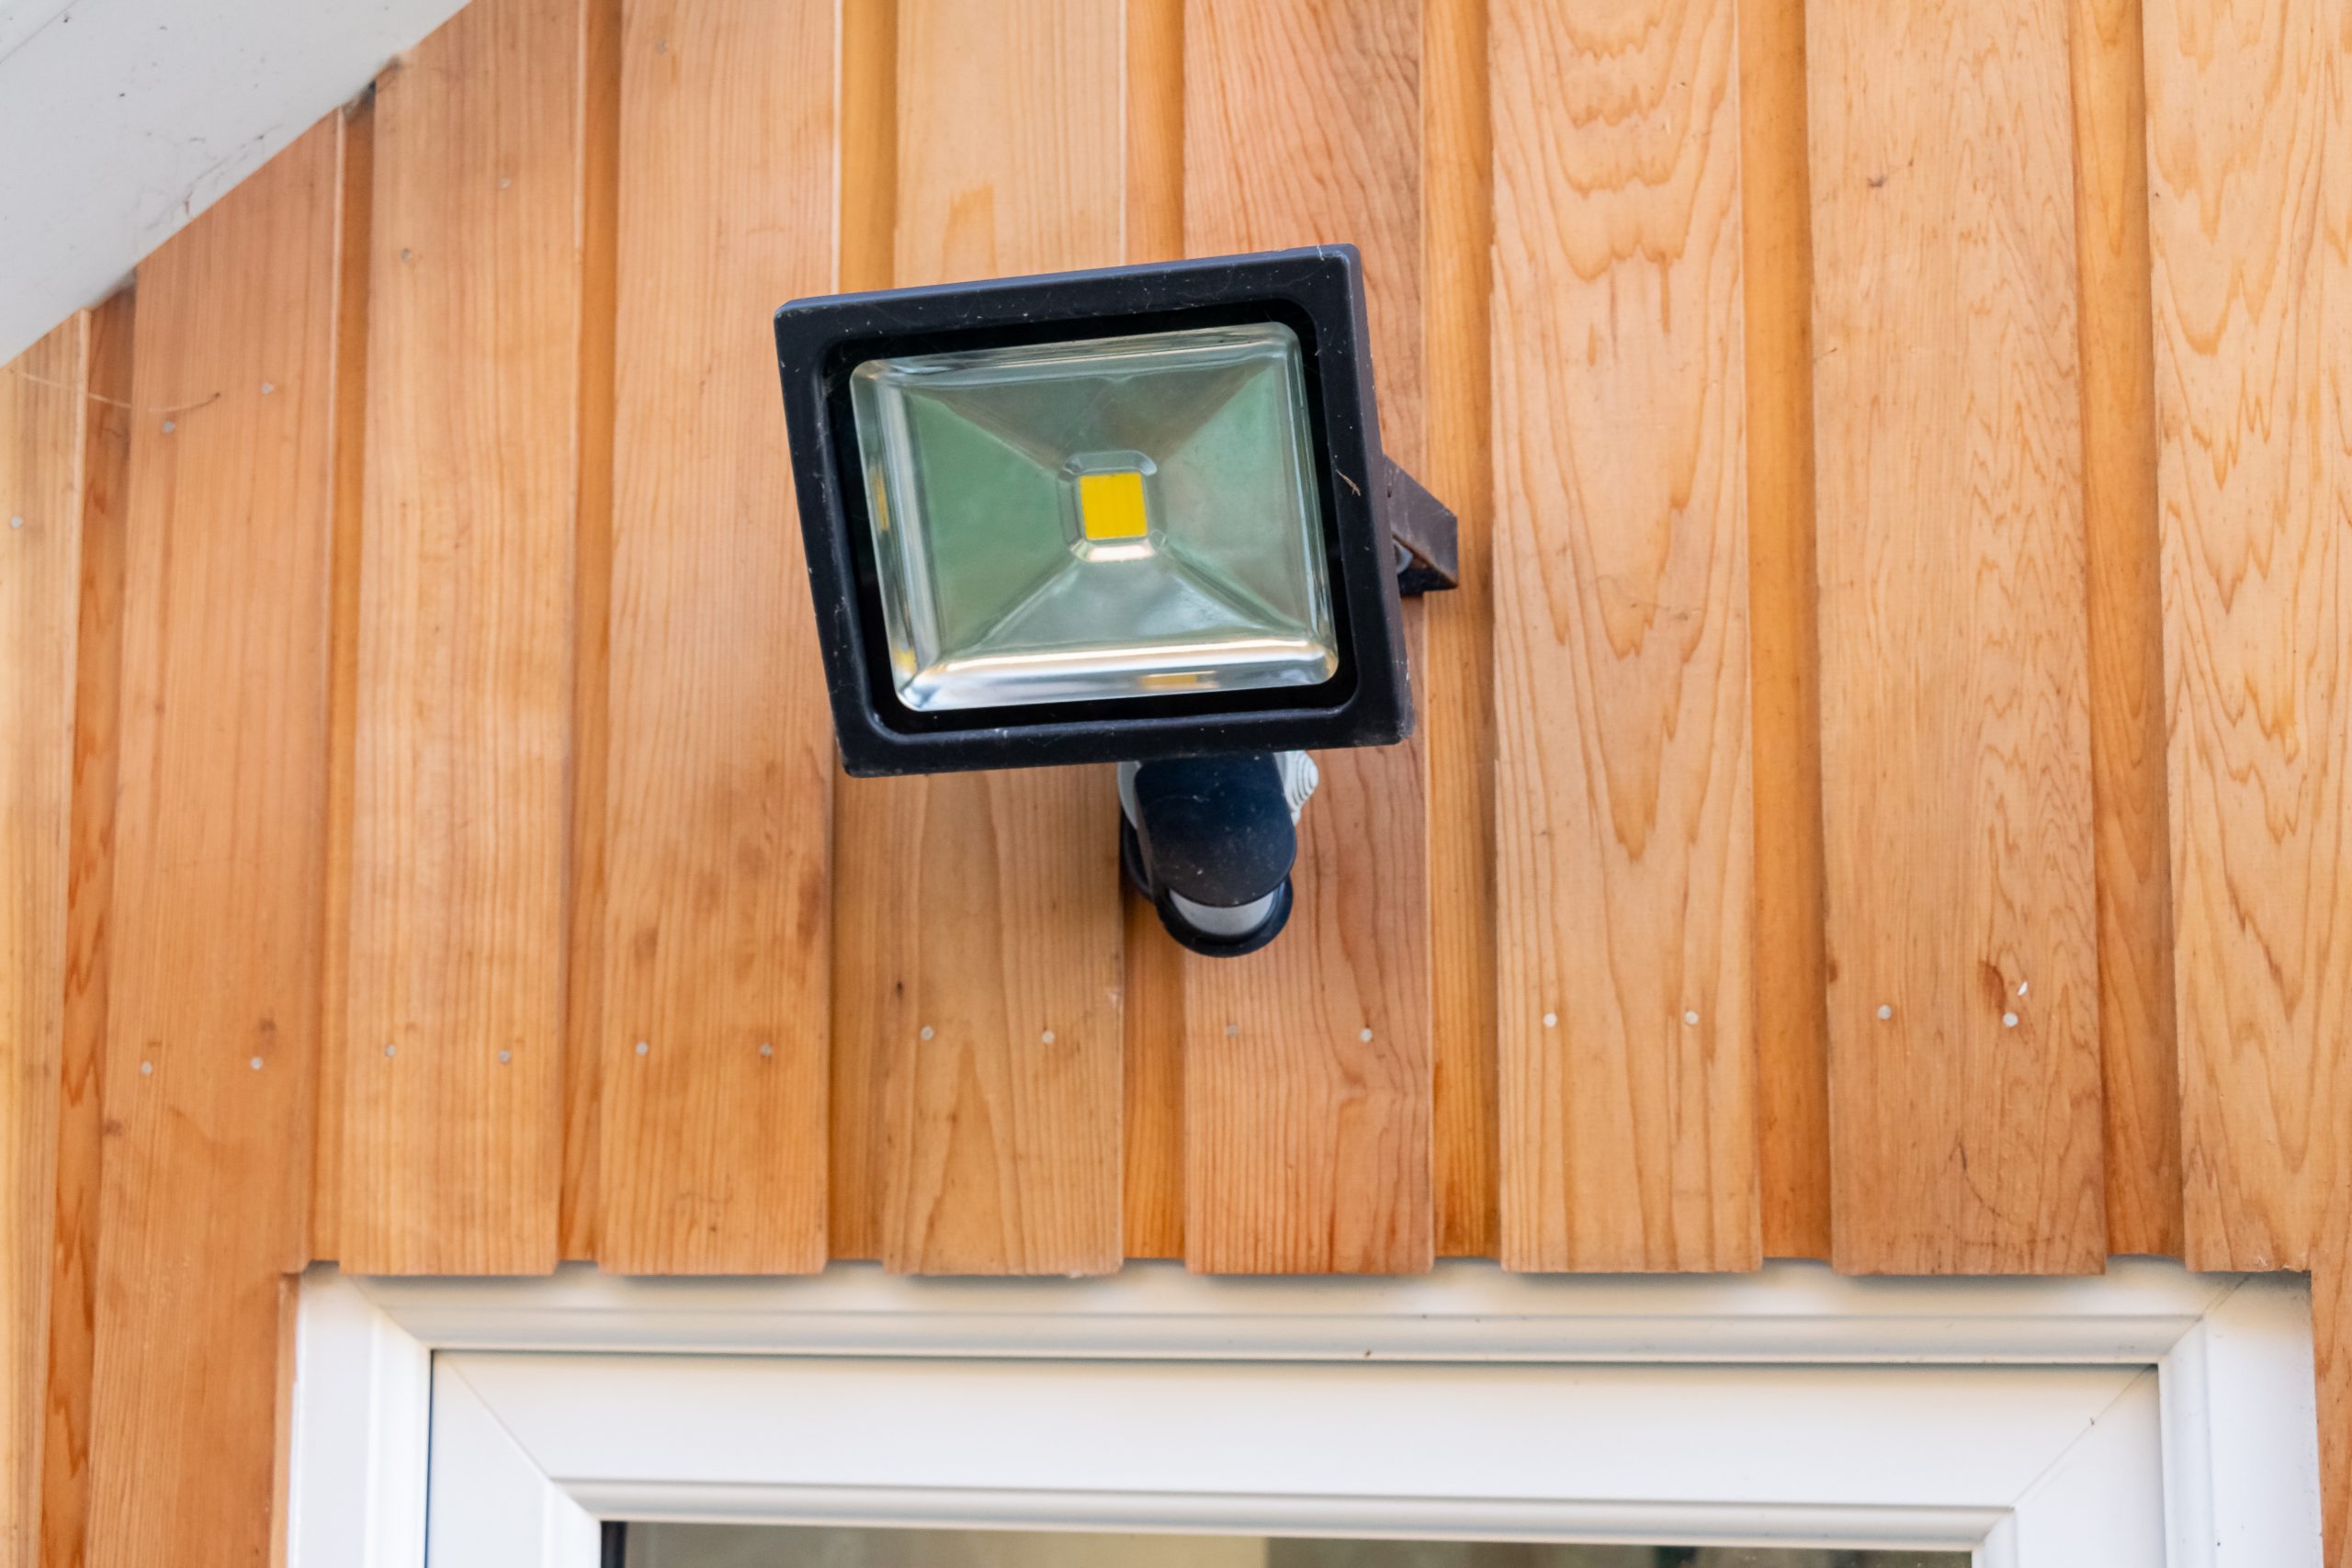 Garden flood sensor light fixed to a wooden wall above a door